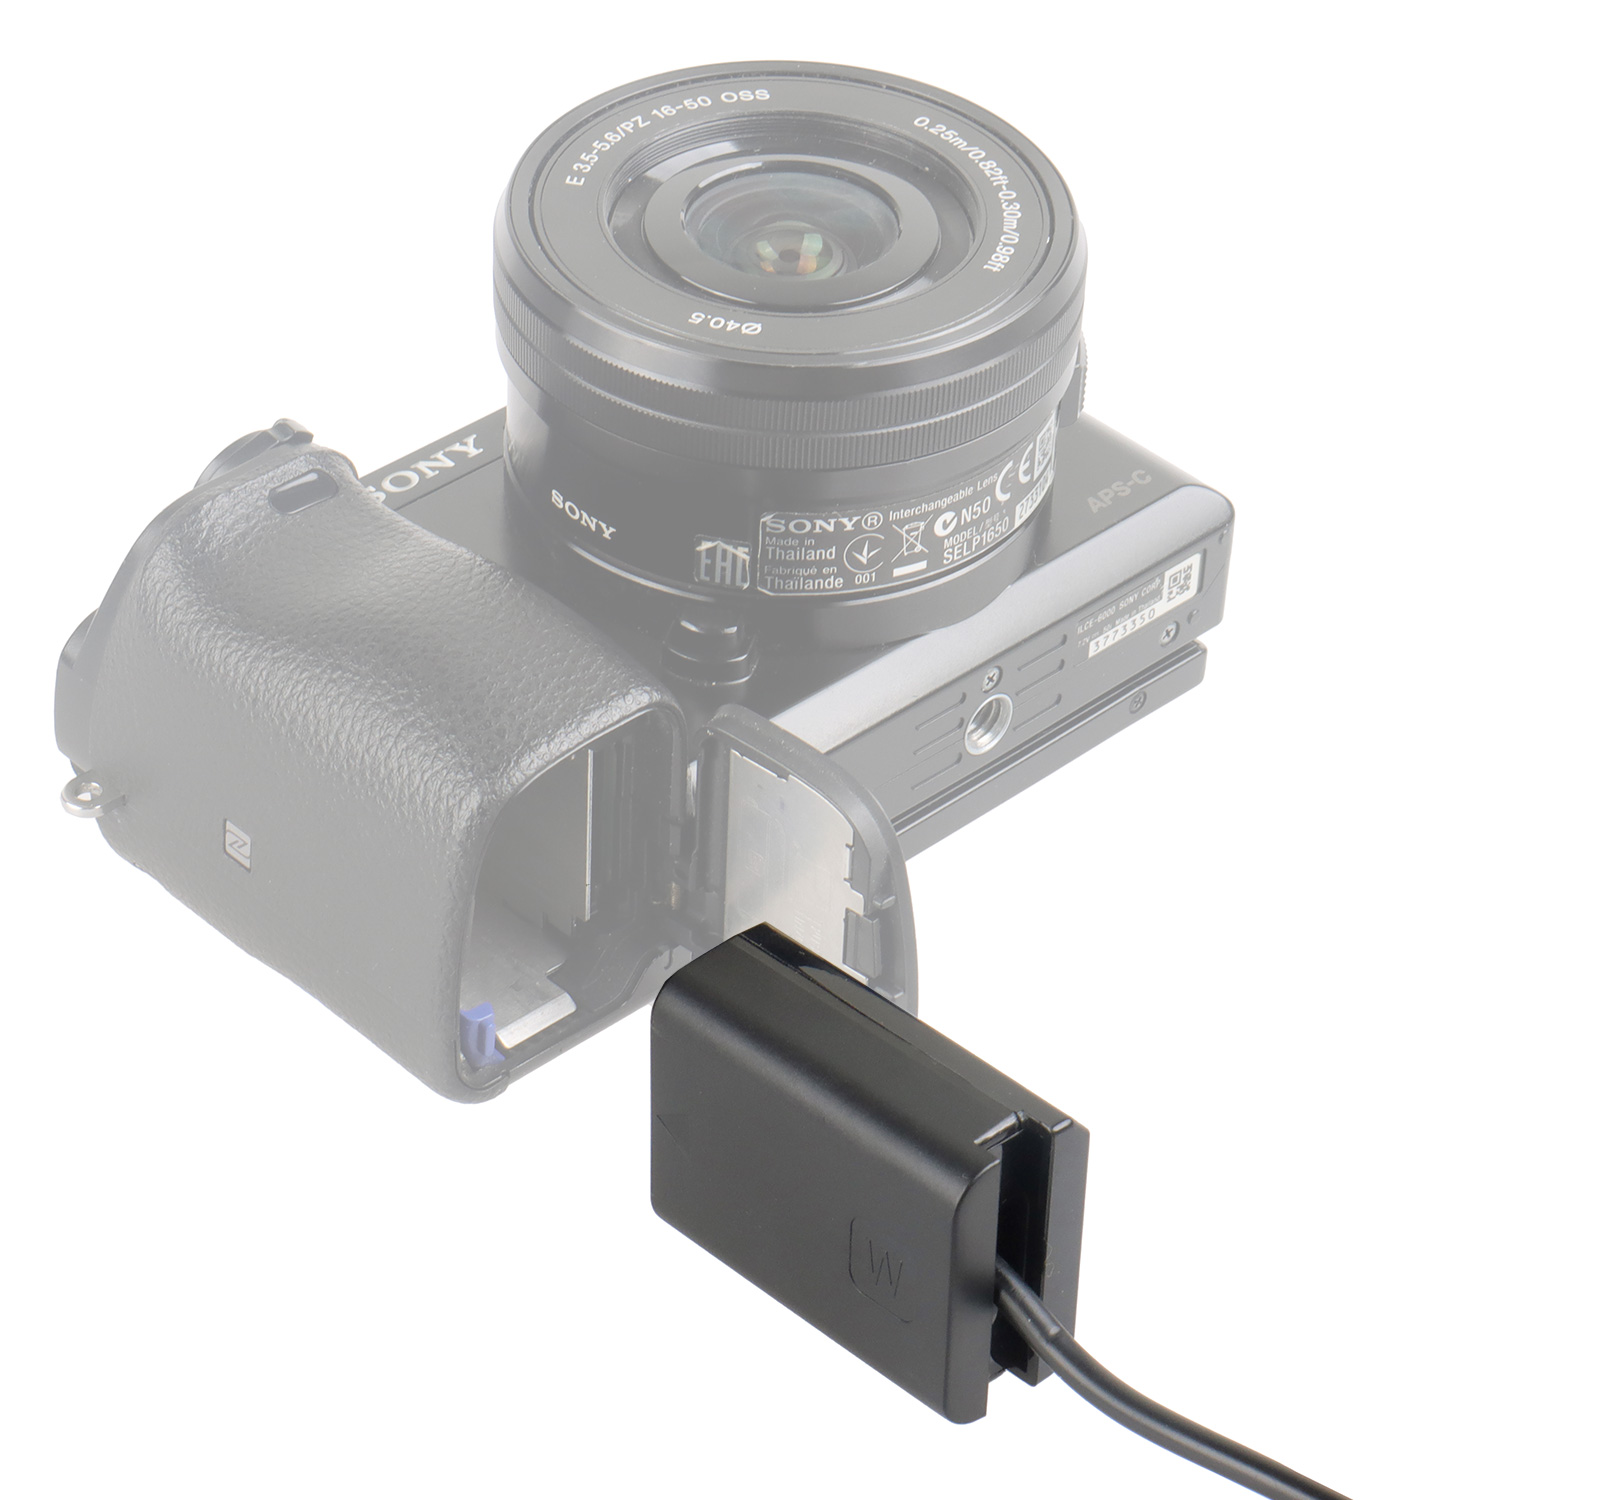 ayex DC-Coupler für Sony Kameras mit NP-FW50 Akku-Dummy für permanenente Stromversorgung über z.B. V-Mount Akku